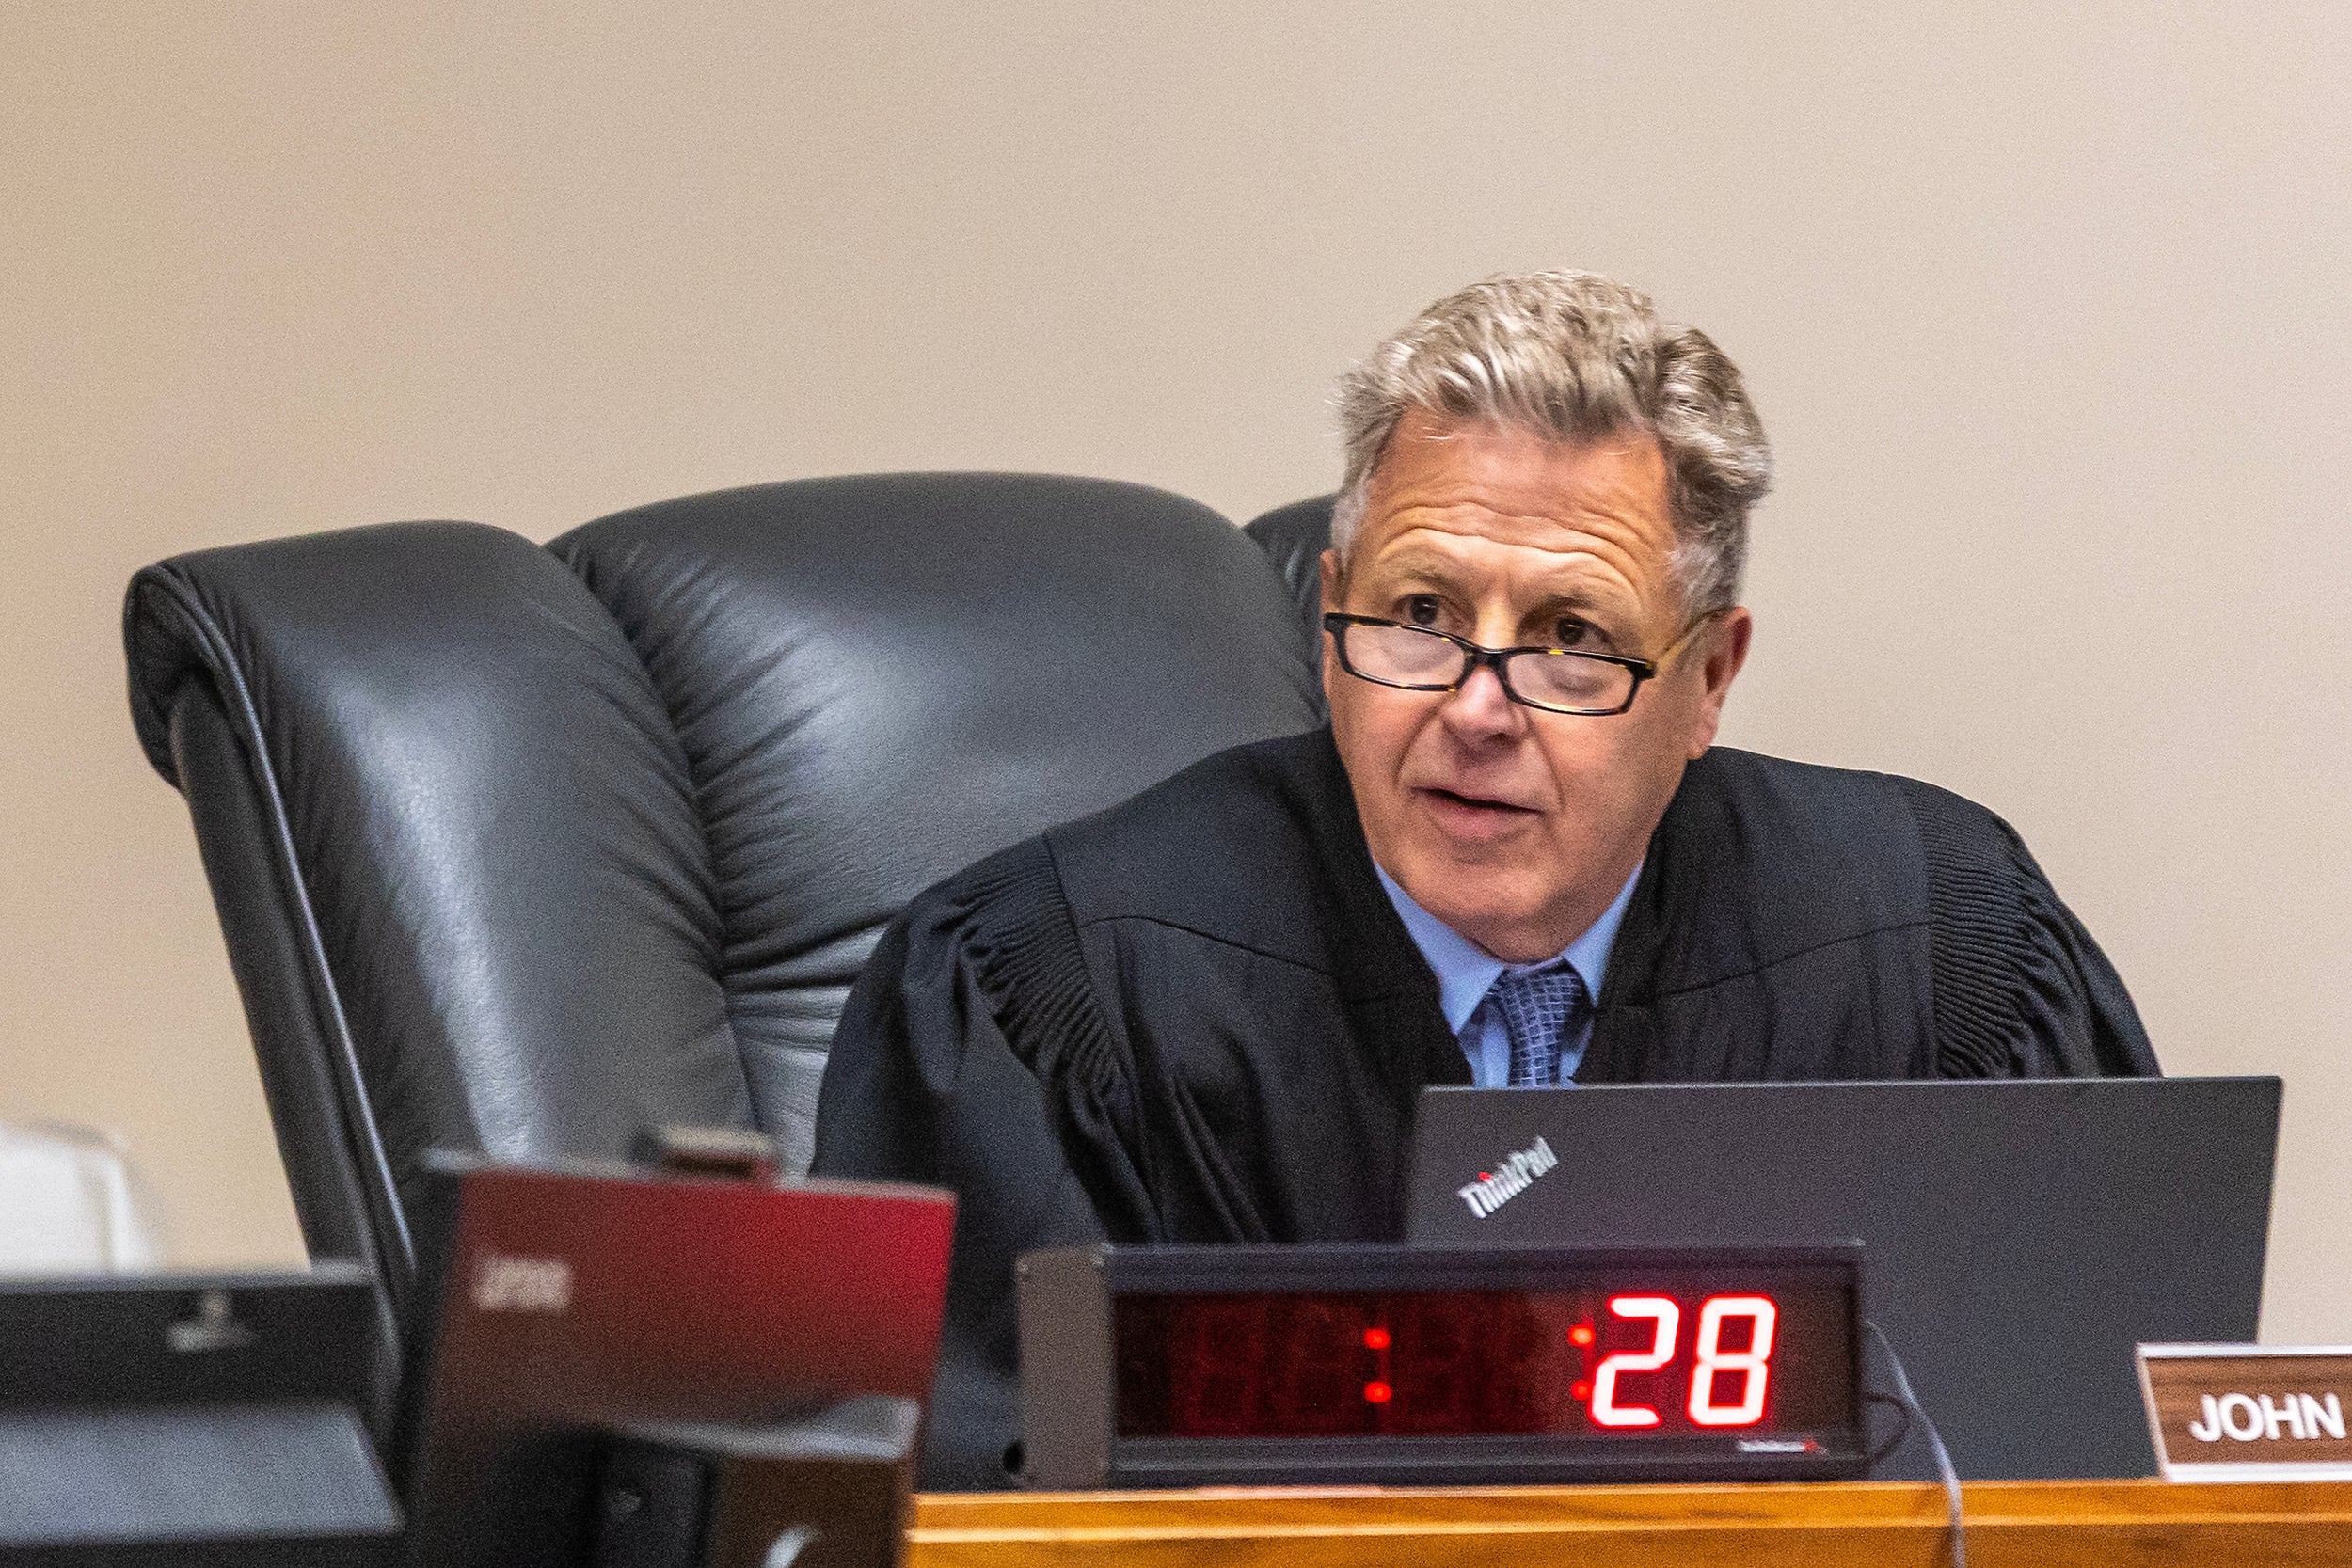 Judge John Judge speaks during a hearing